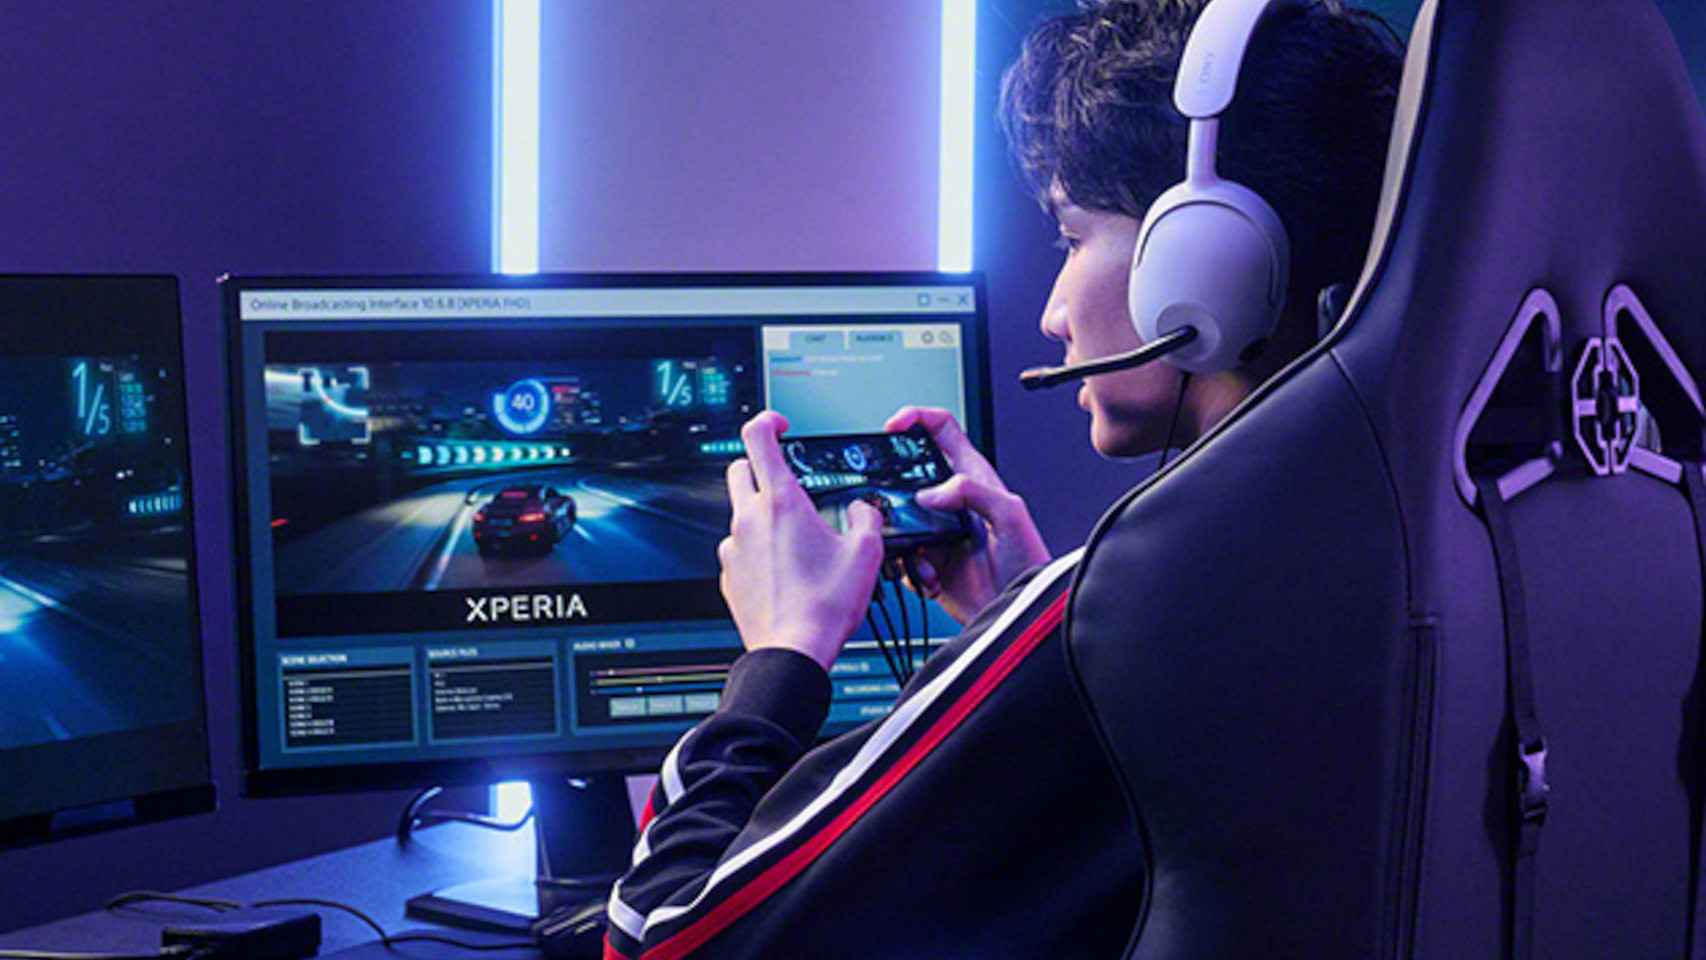 El Xperia Stream está diseñado para hacer streaming de juegos